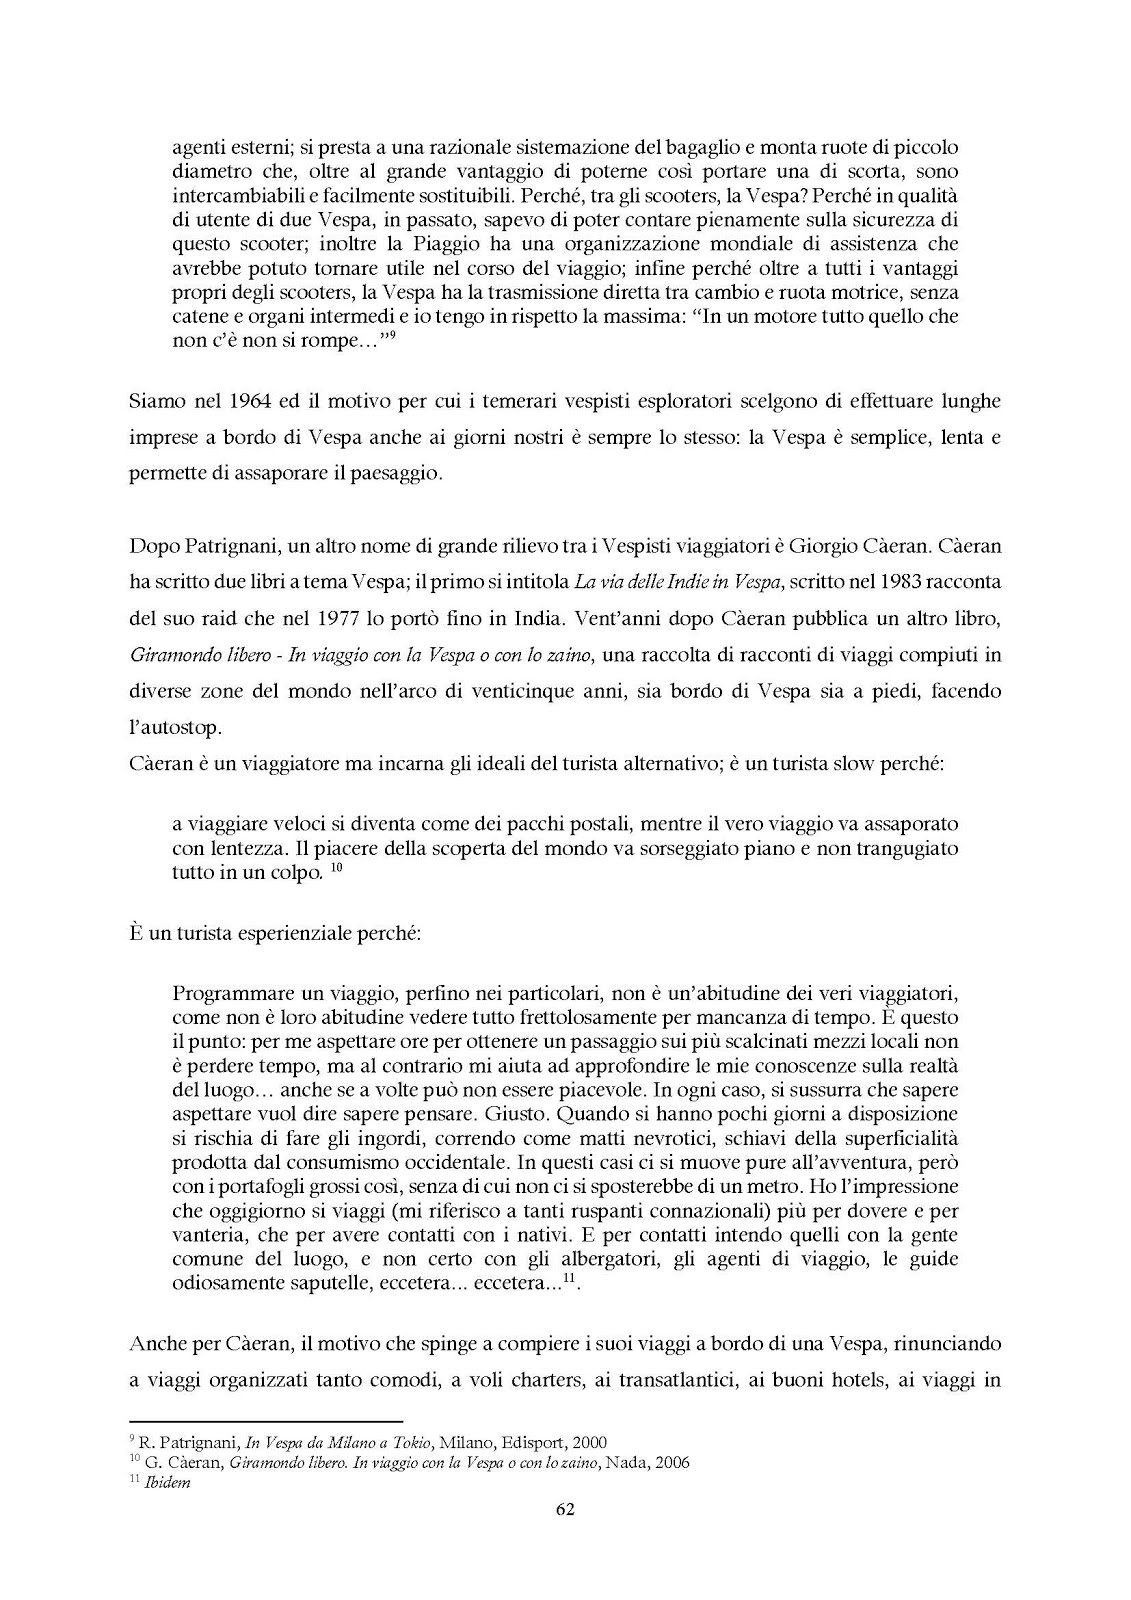 Pagina 62, della Tesi di Laurea di MONICA BOTTIN.